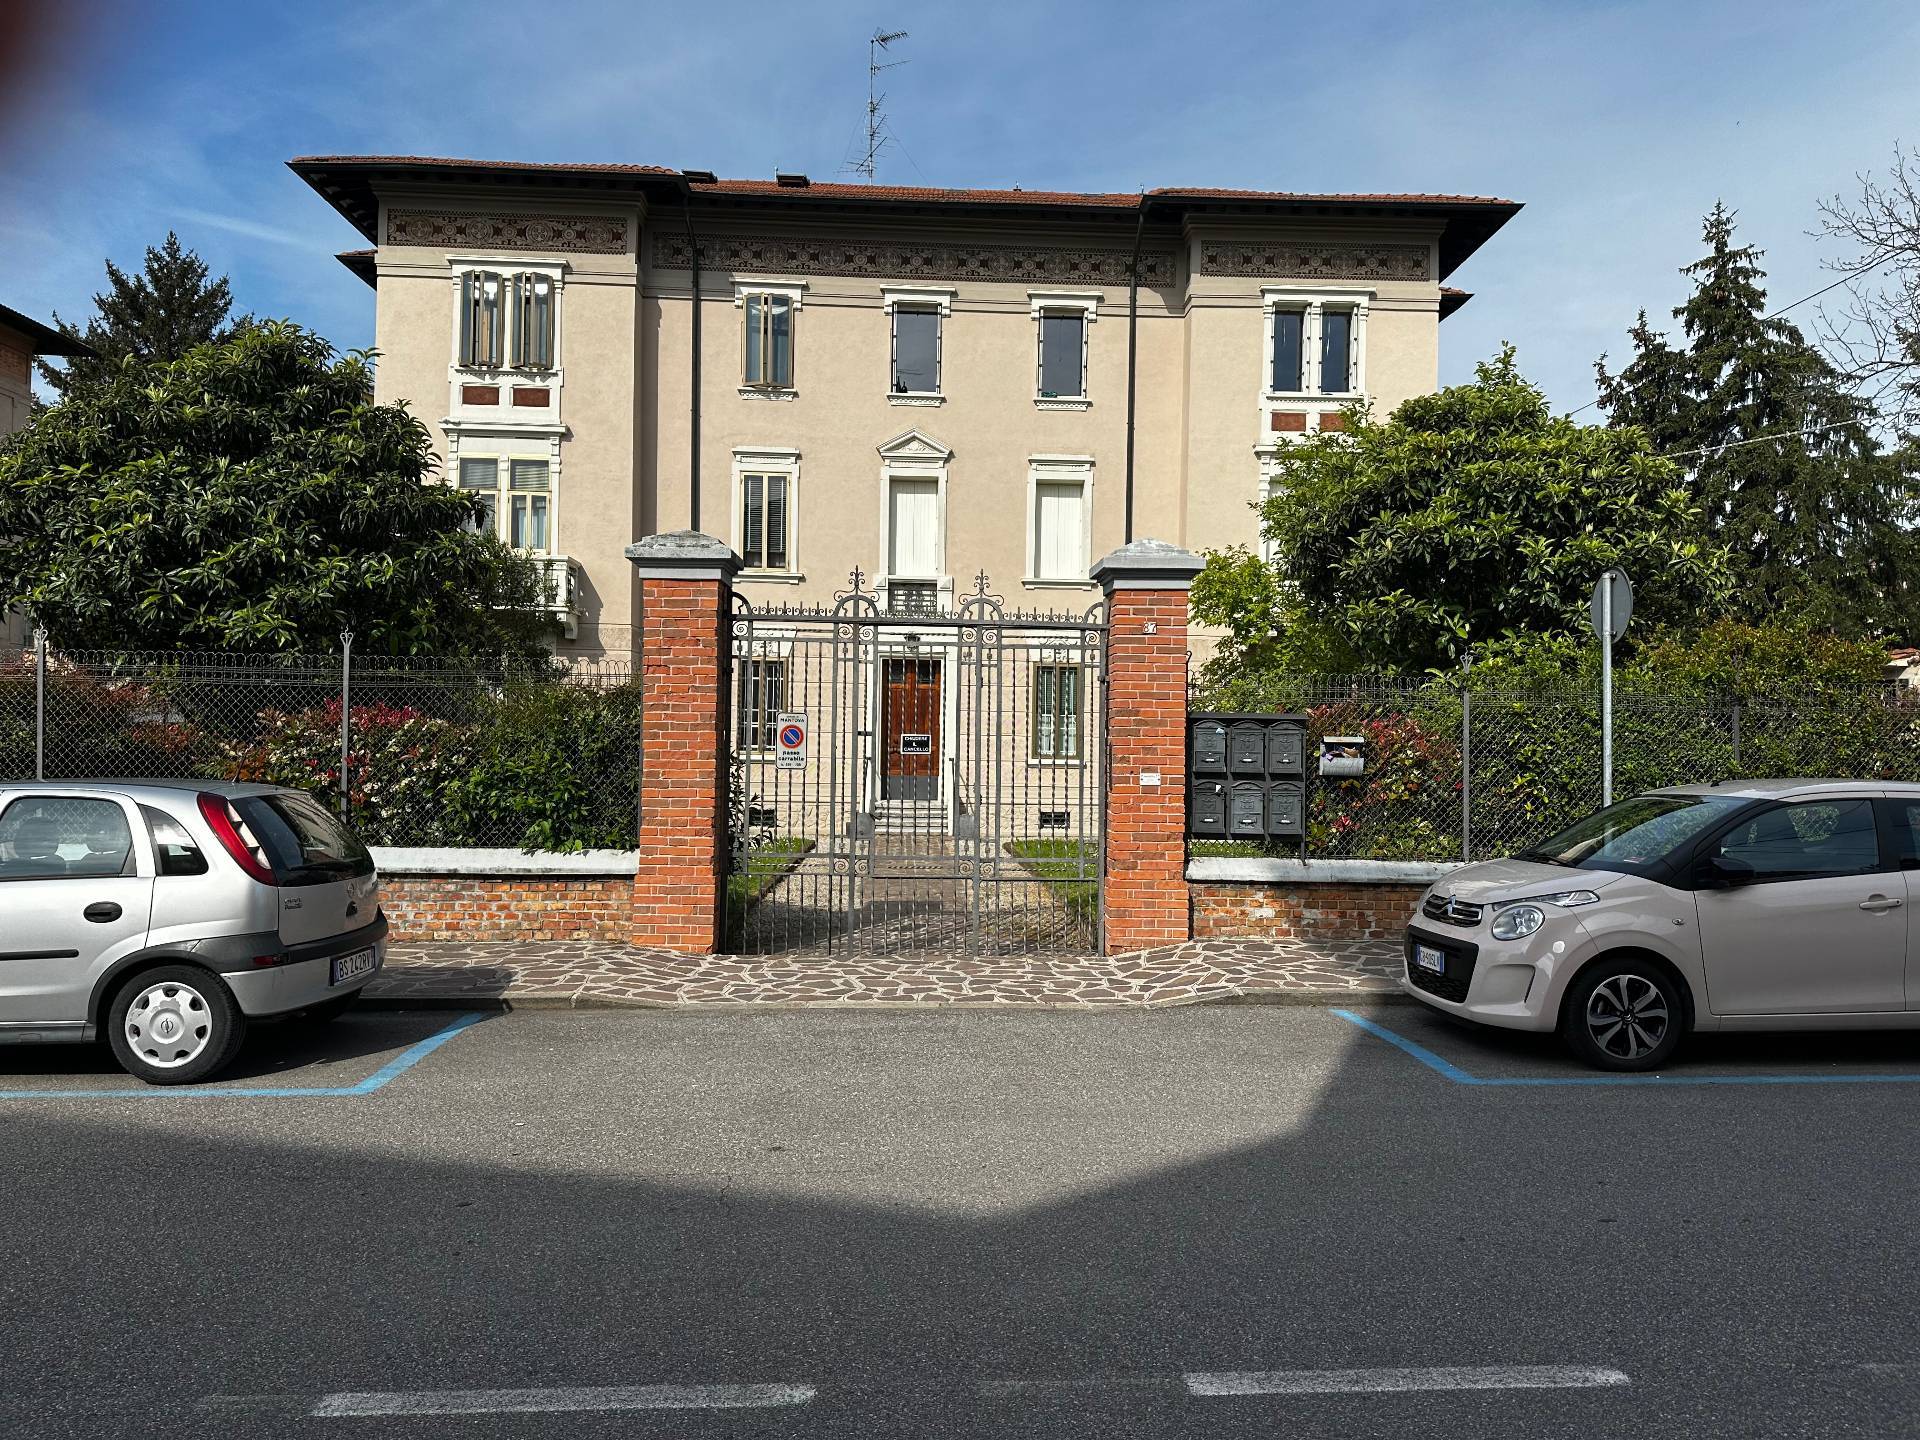 Appartamento in affitto a Mantova (MN)